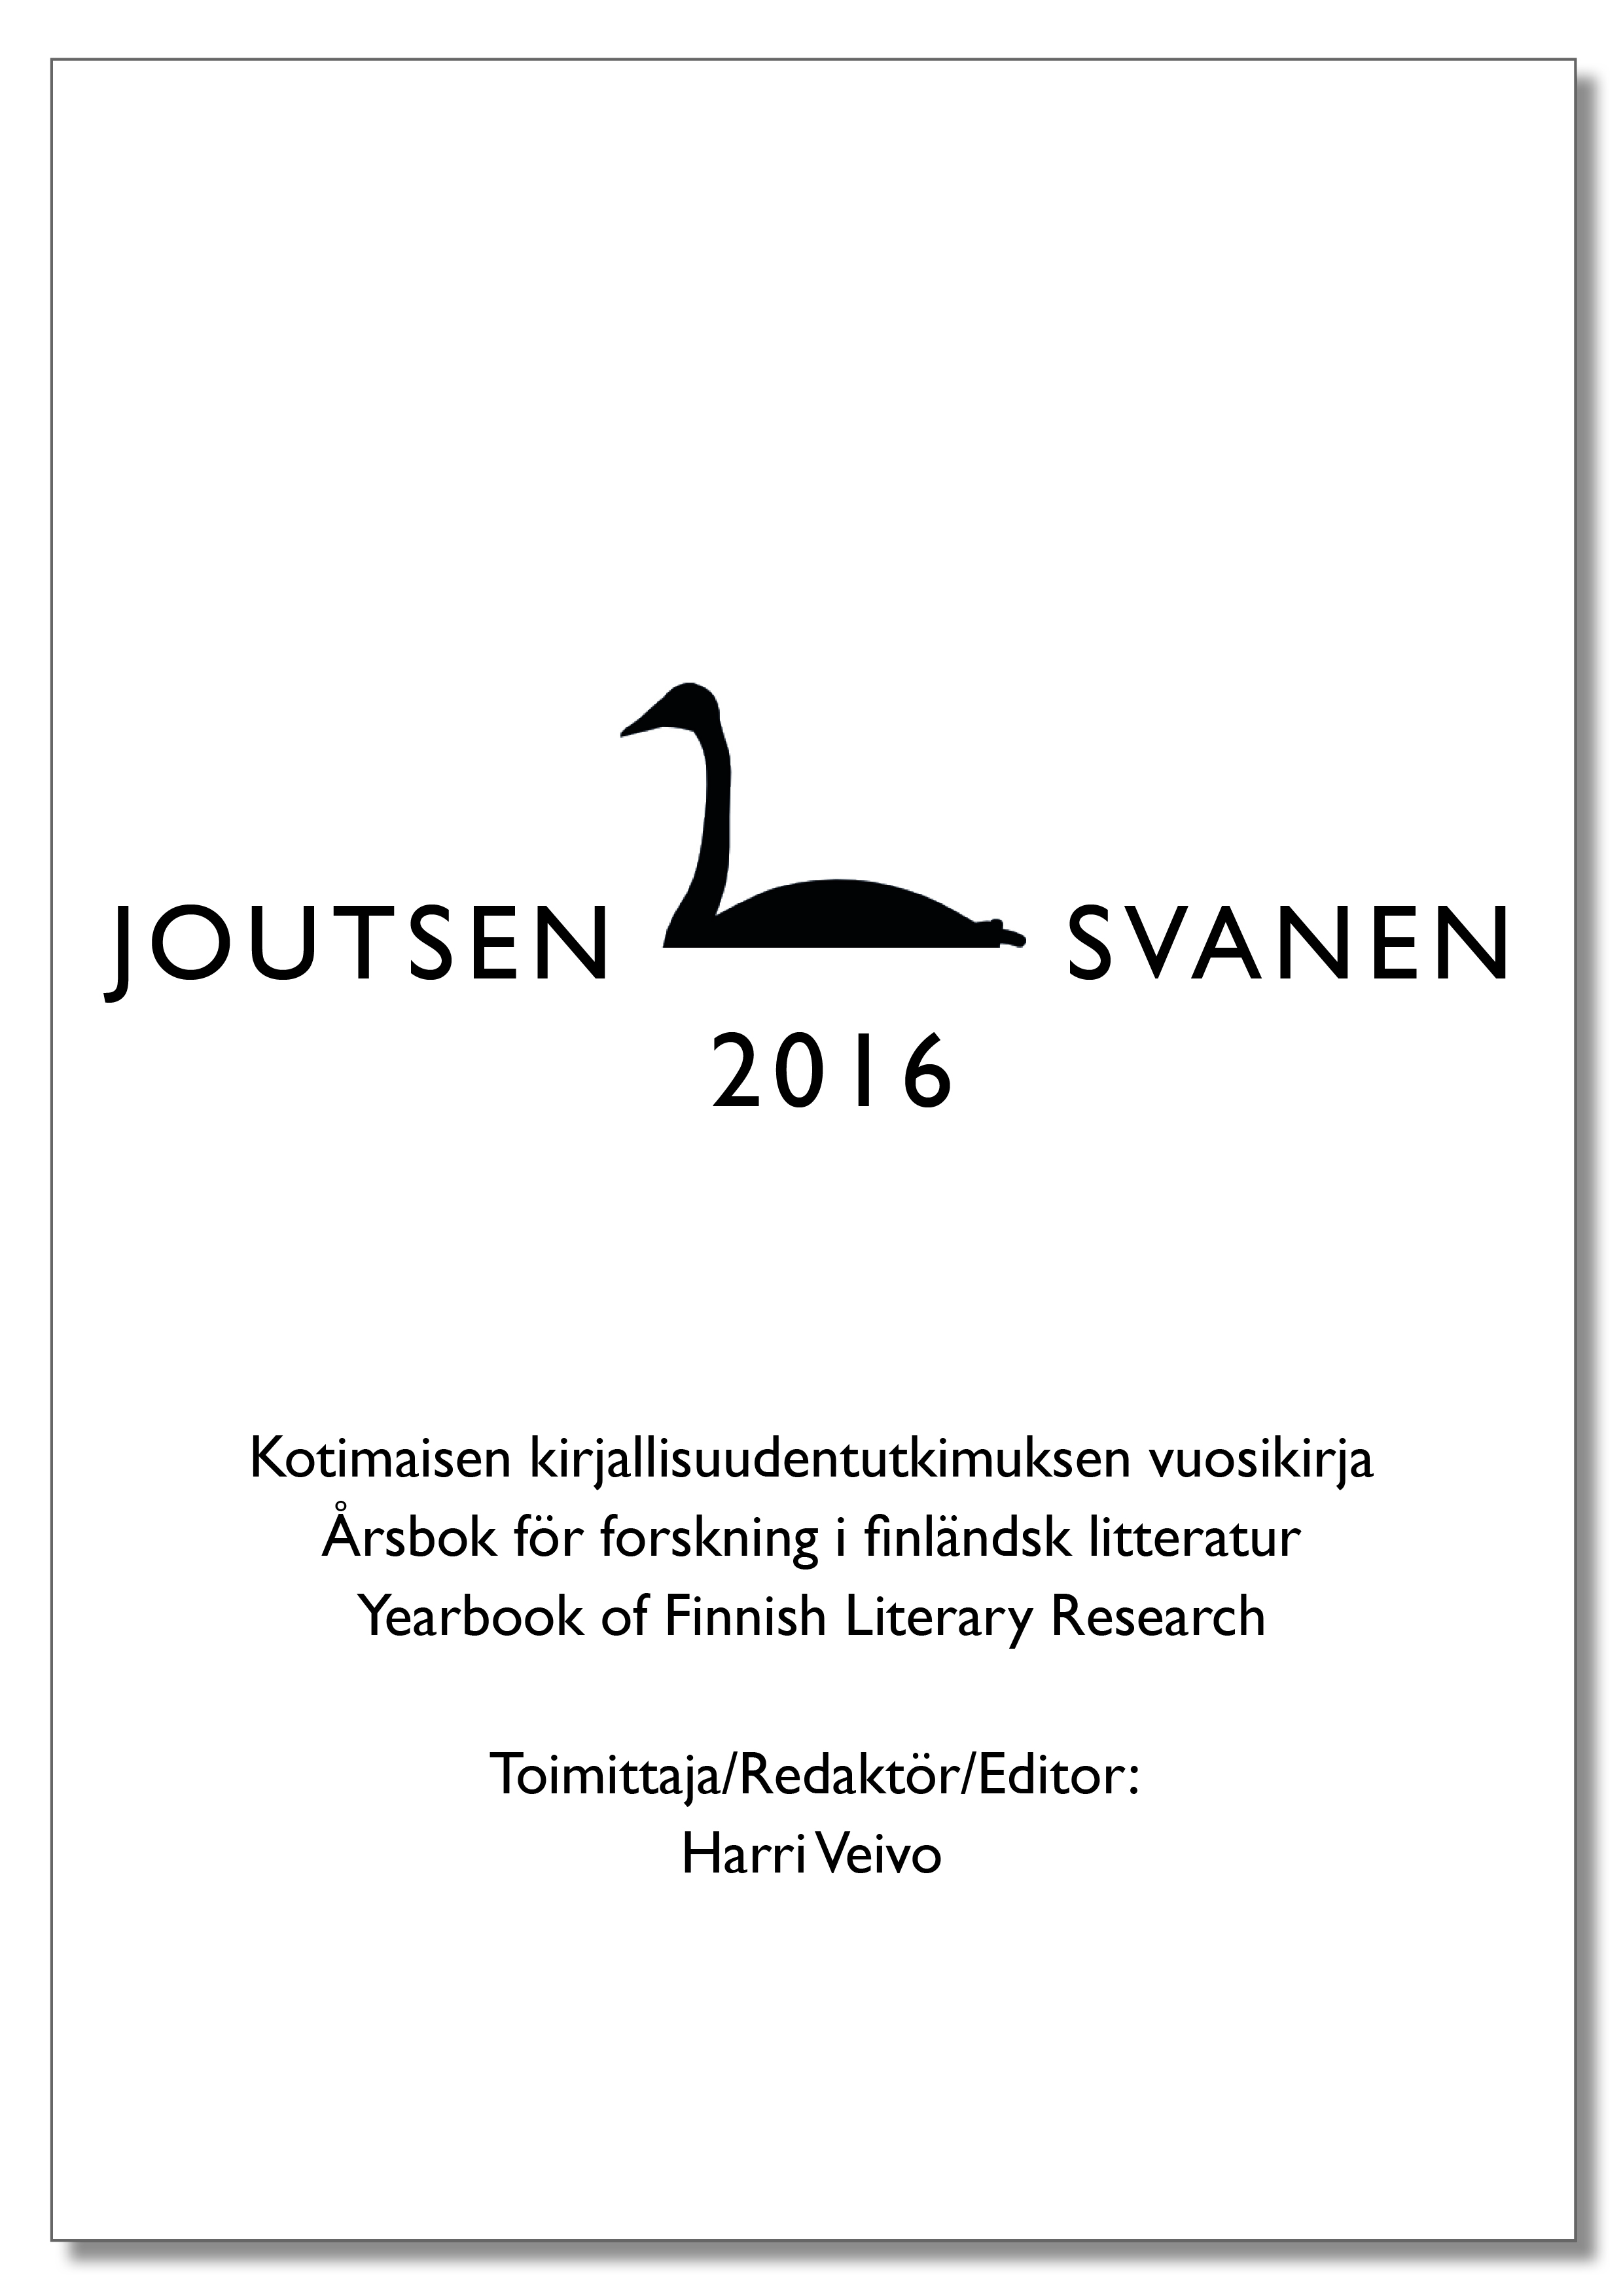 Joutsen/Svanen 2016